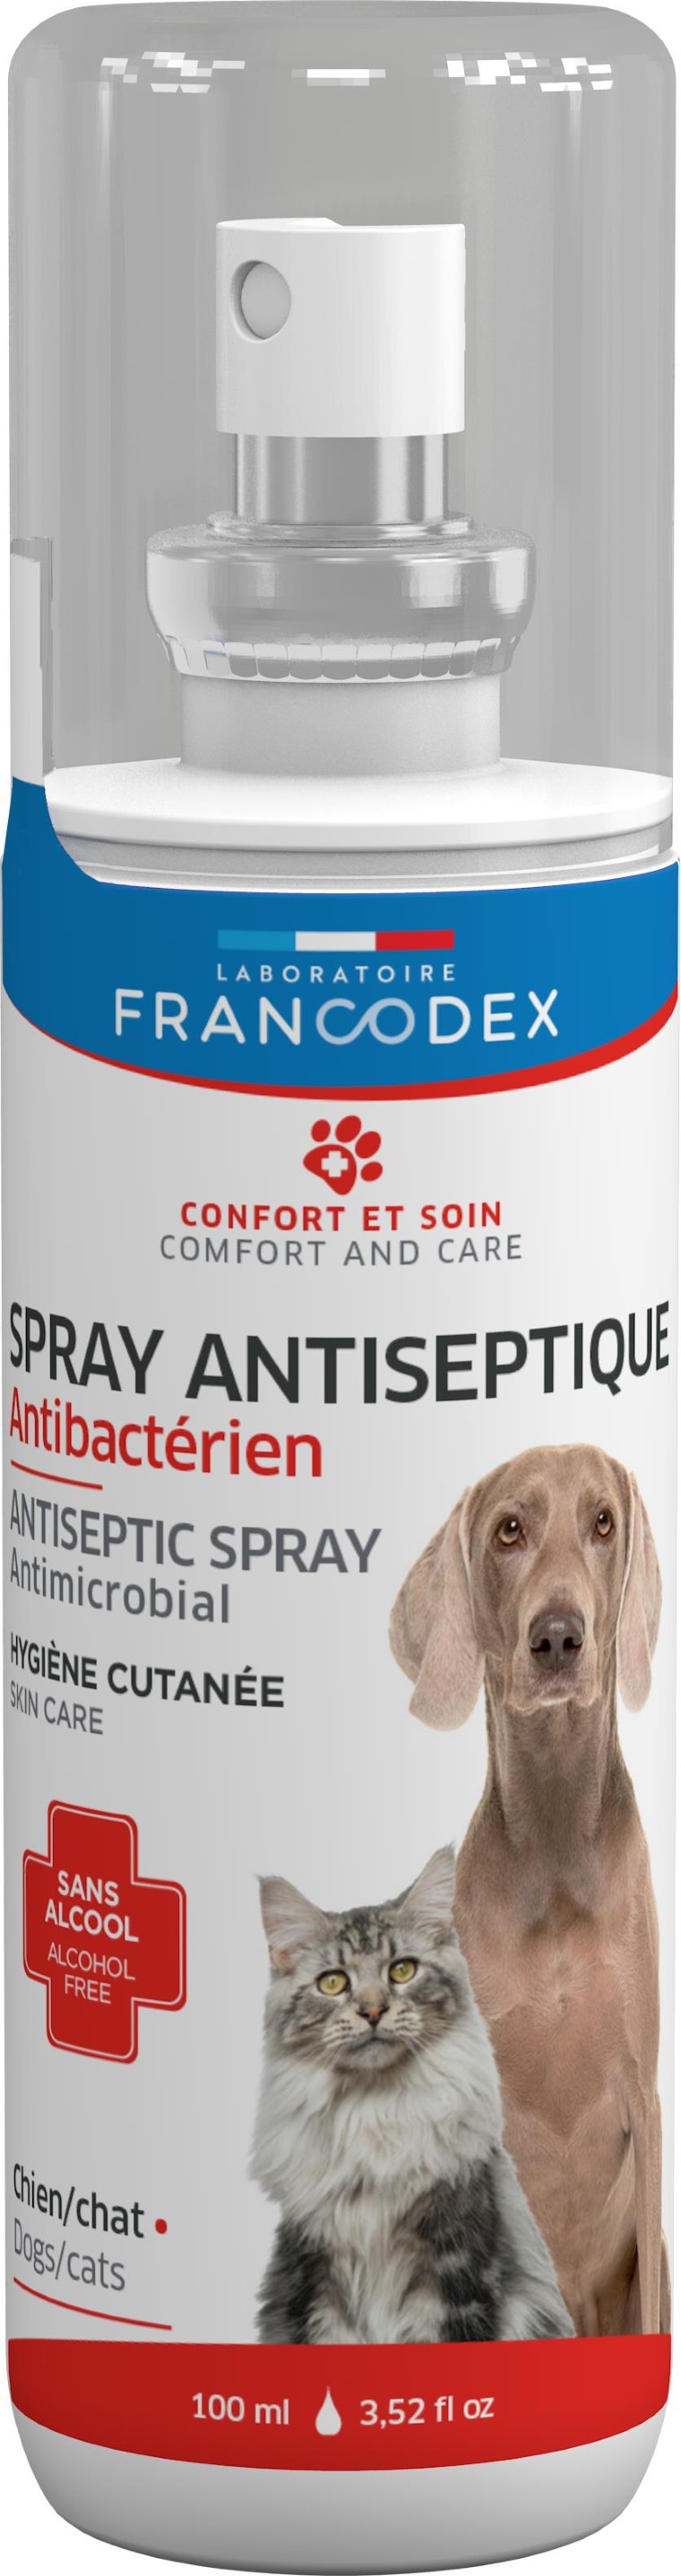 Soin – Francodex Spray antiseptique anti bactérien – 100 ml 982701